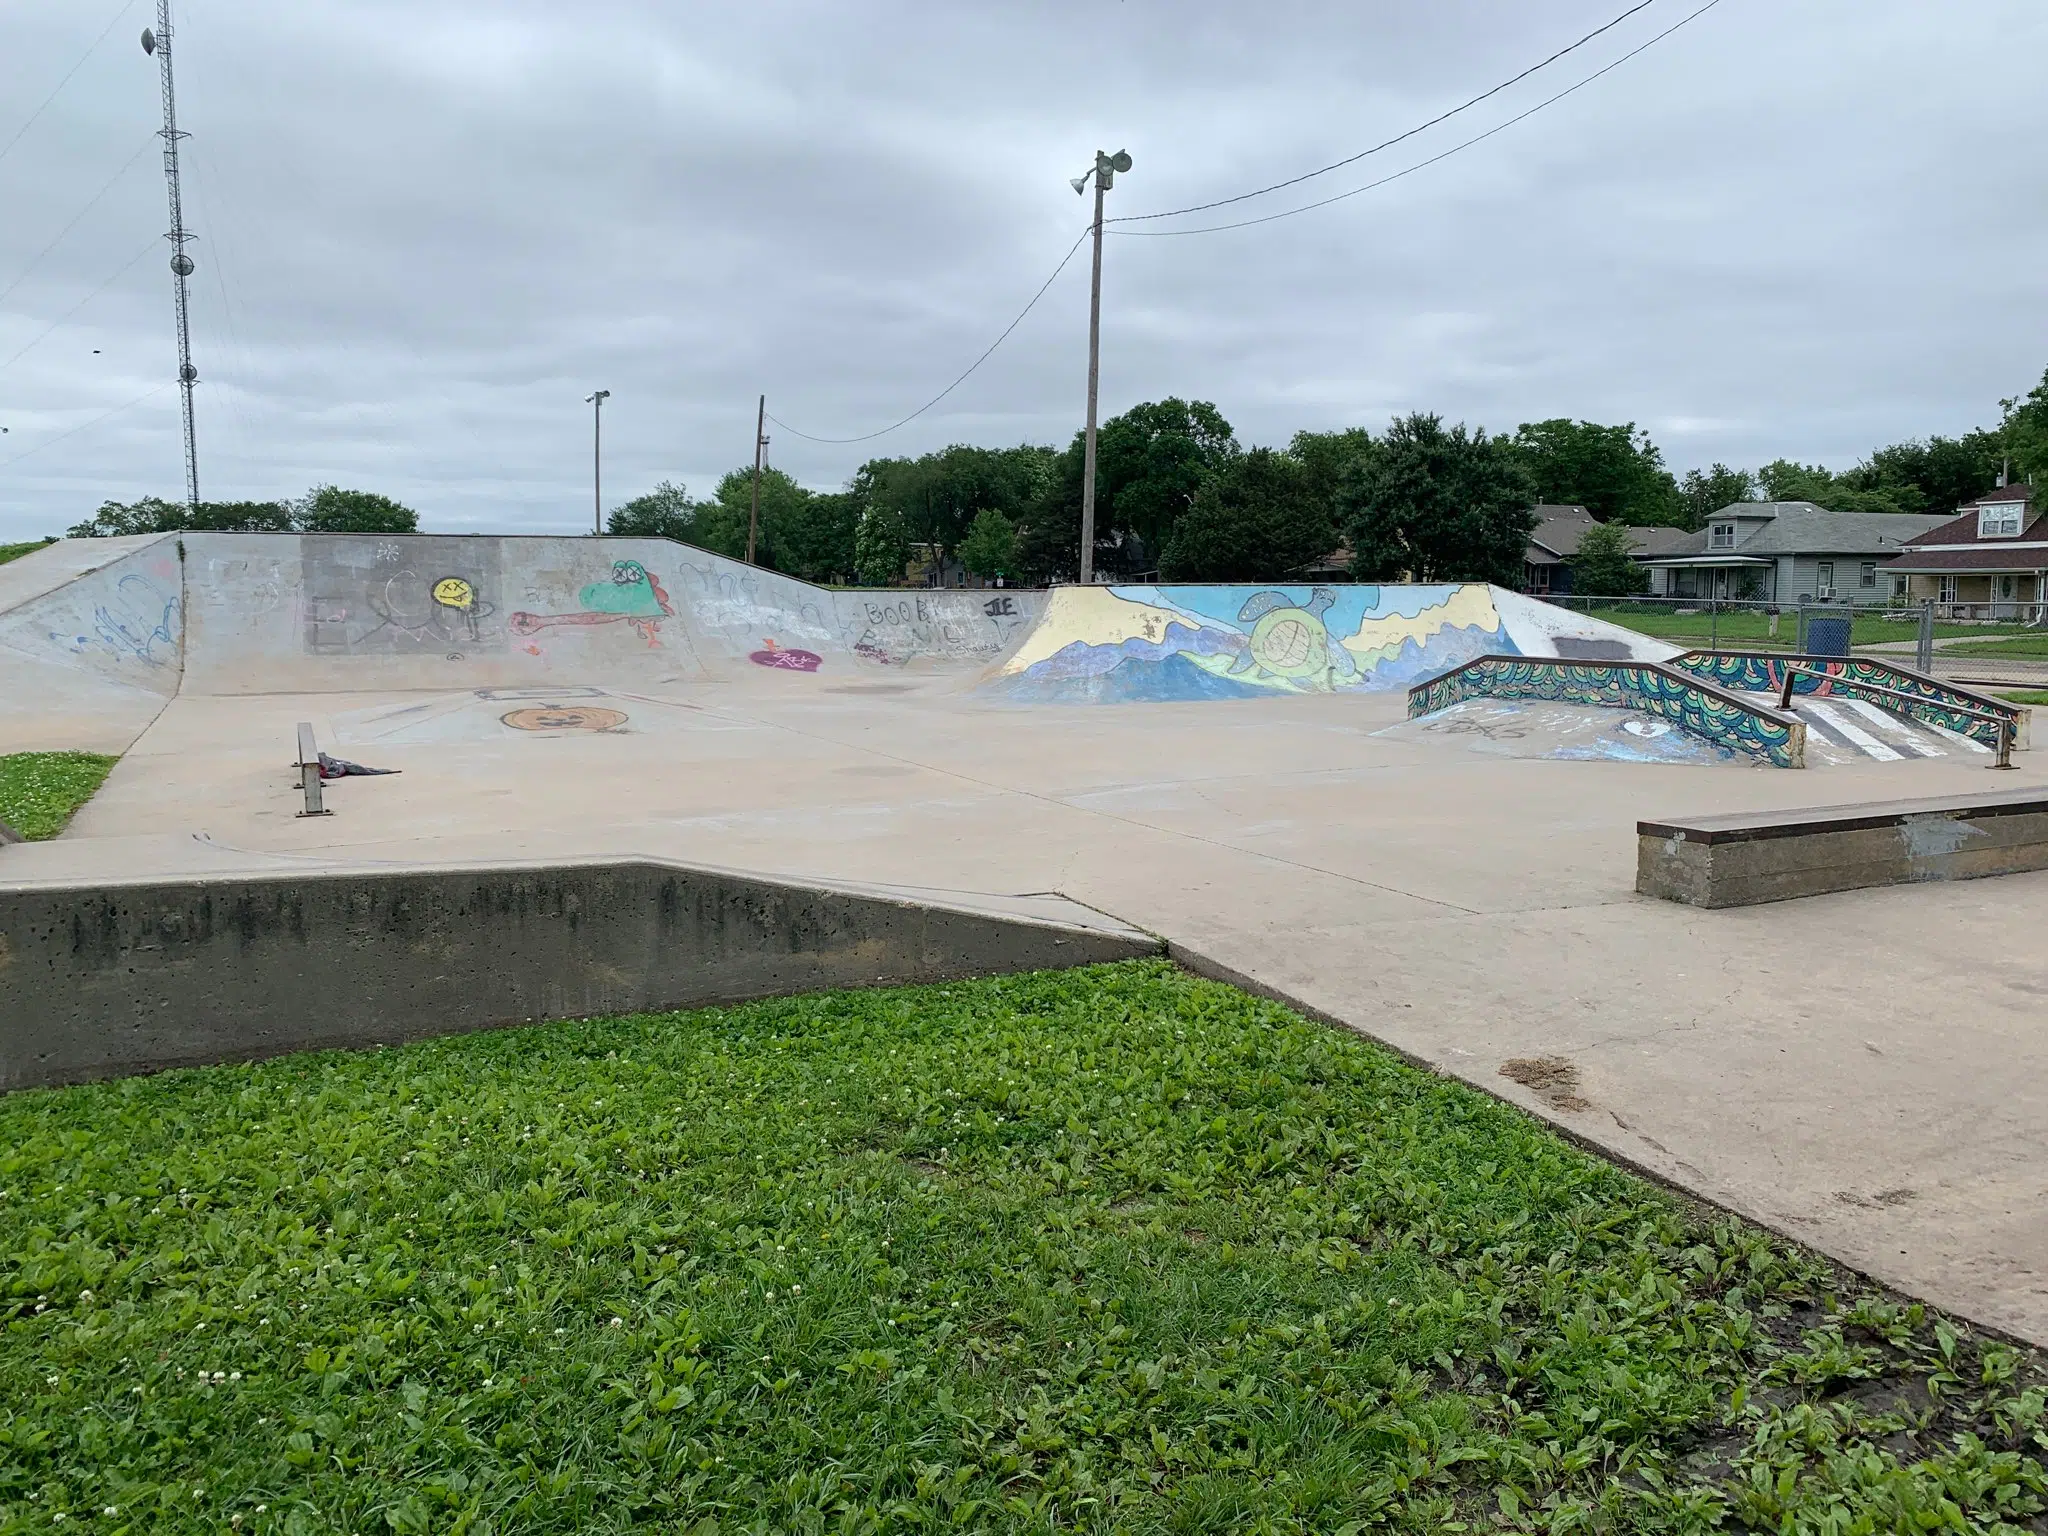 Santa Fe Skate Park Improvements